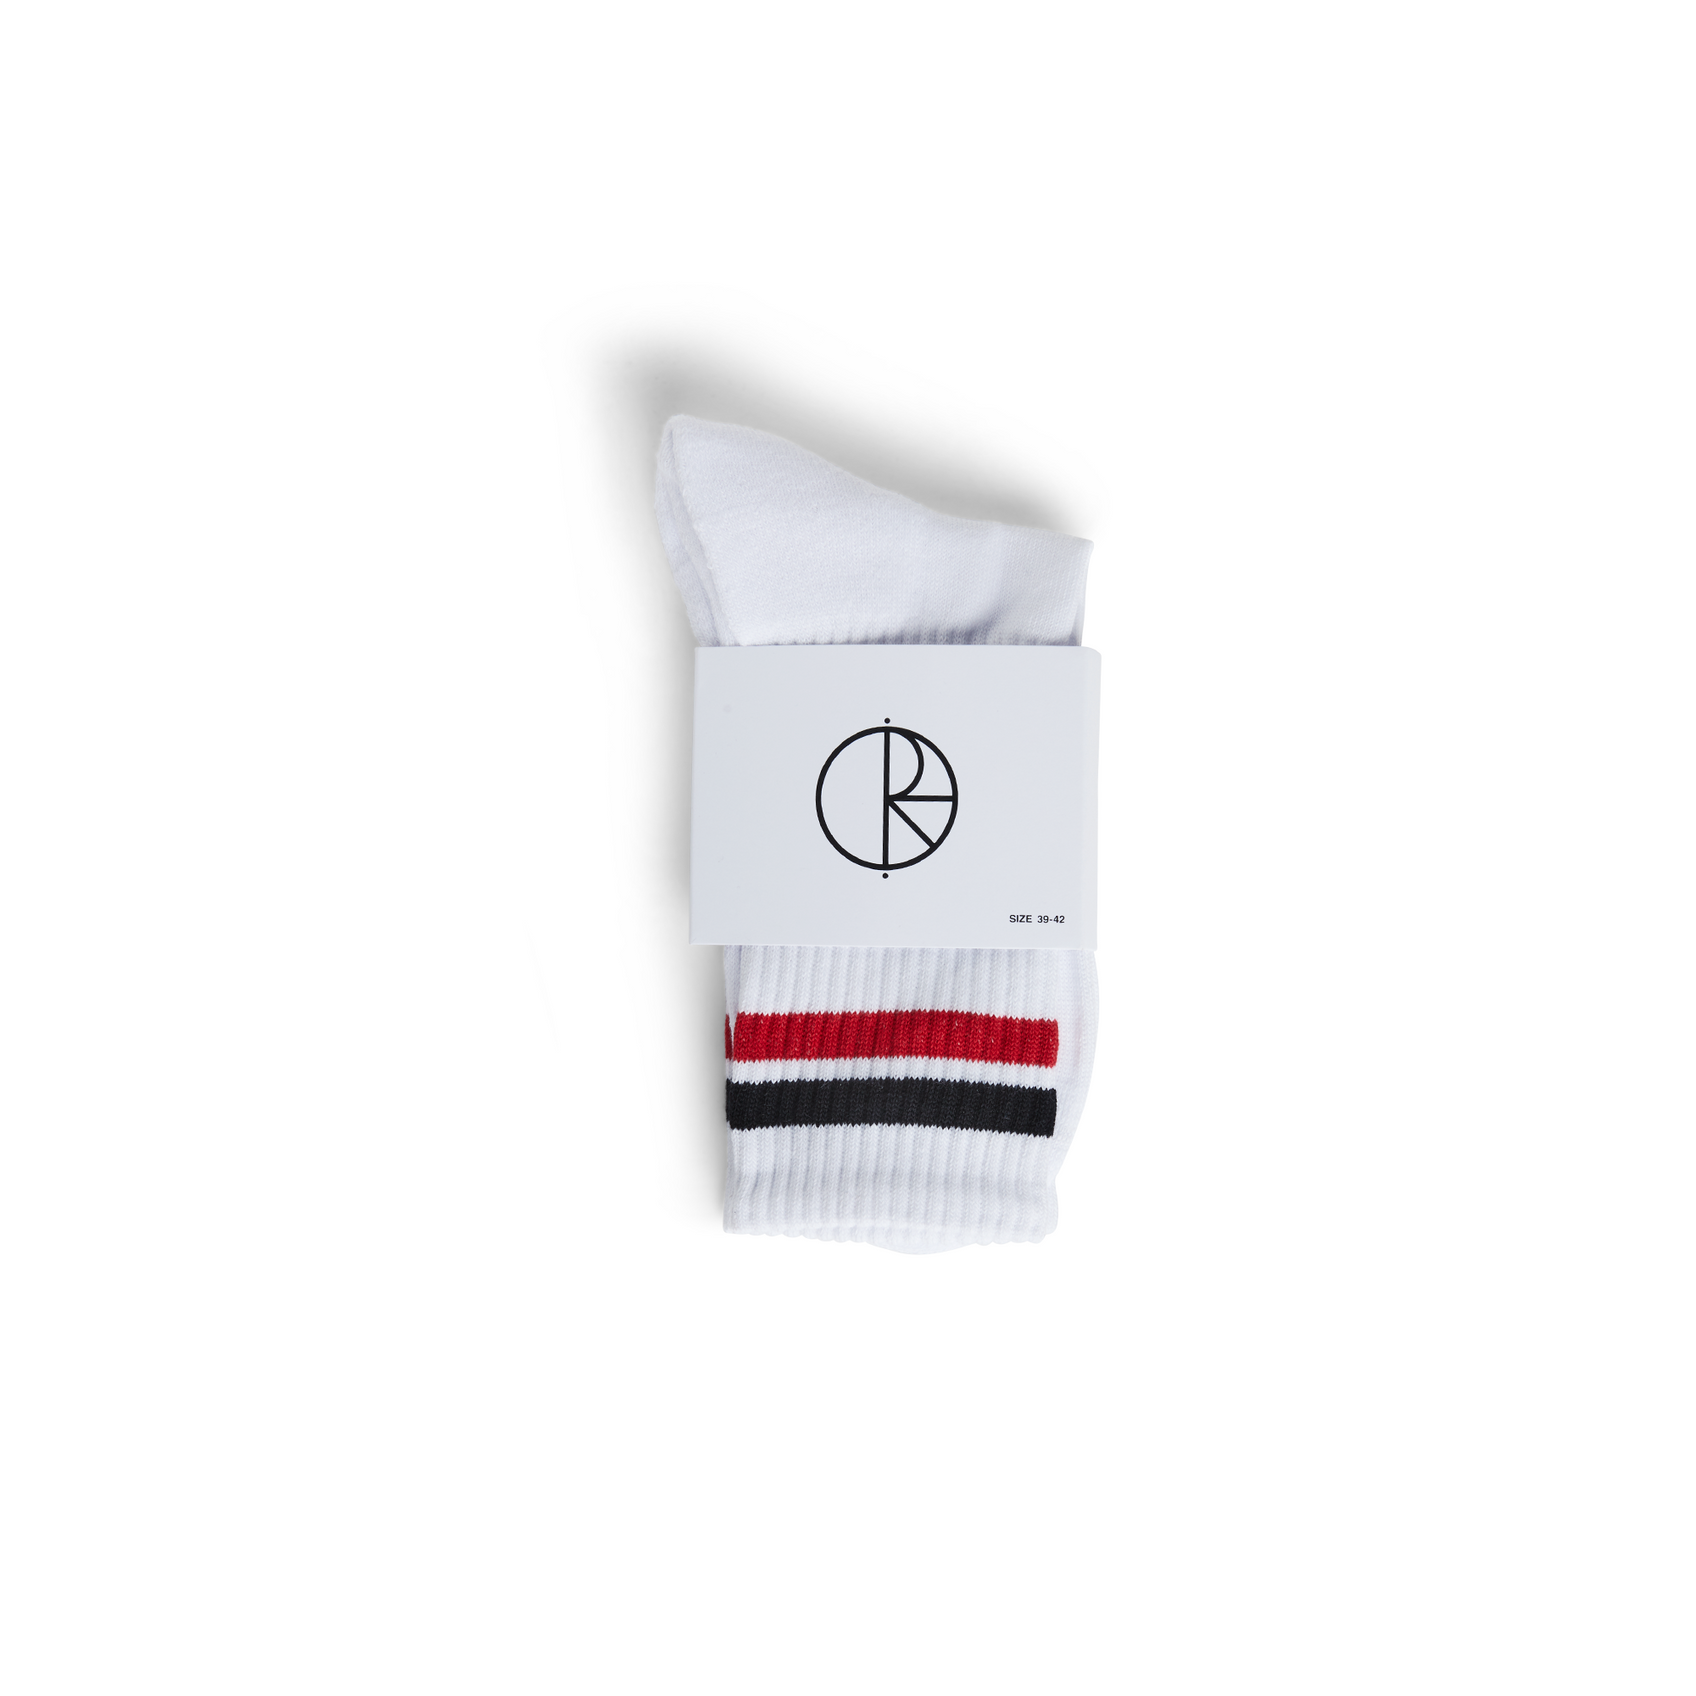 Polar Skate Co. Stripe Socks (White/Black/Red) - Apple Valley Emporium